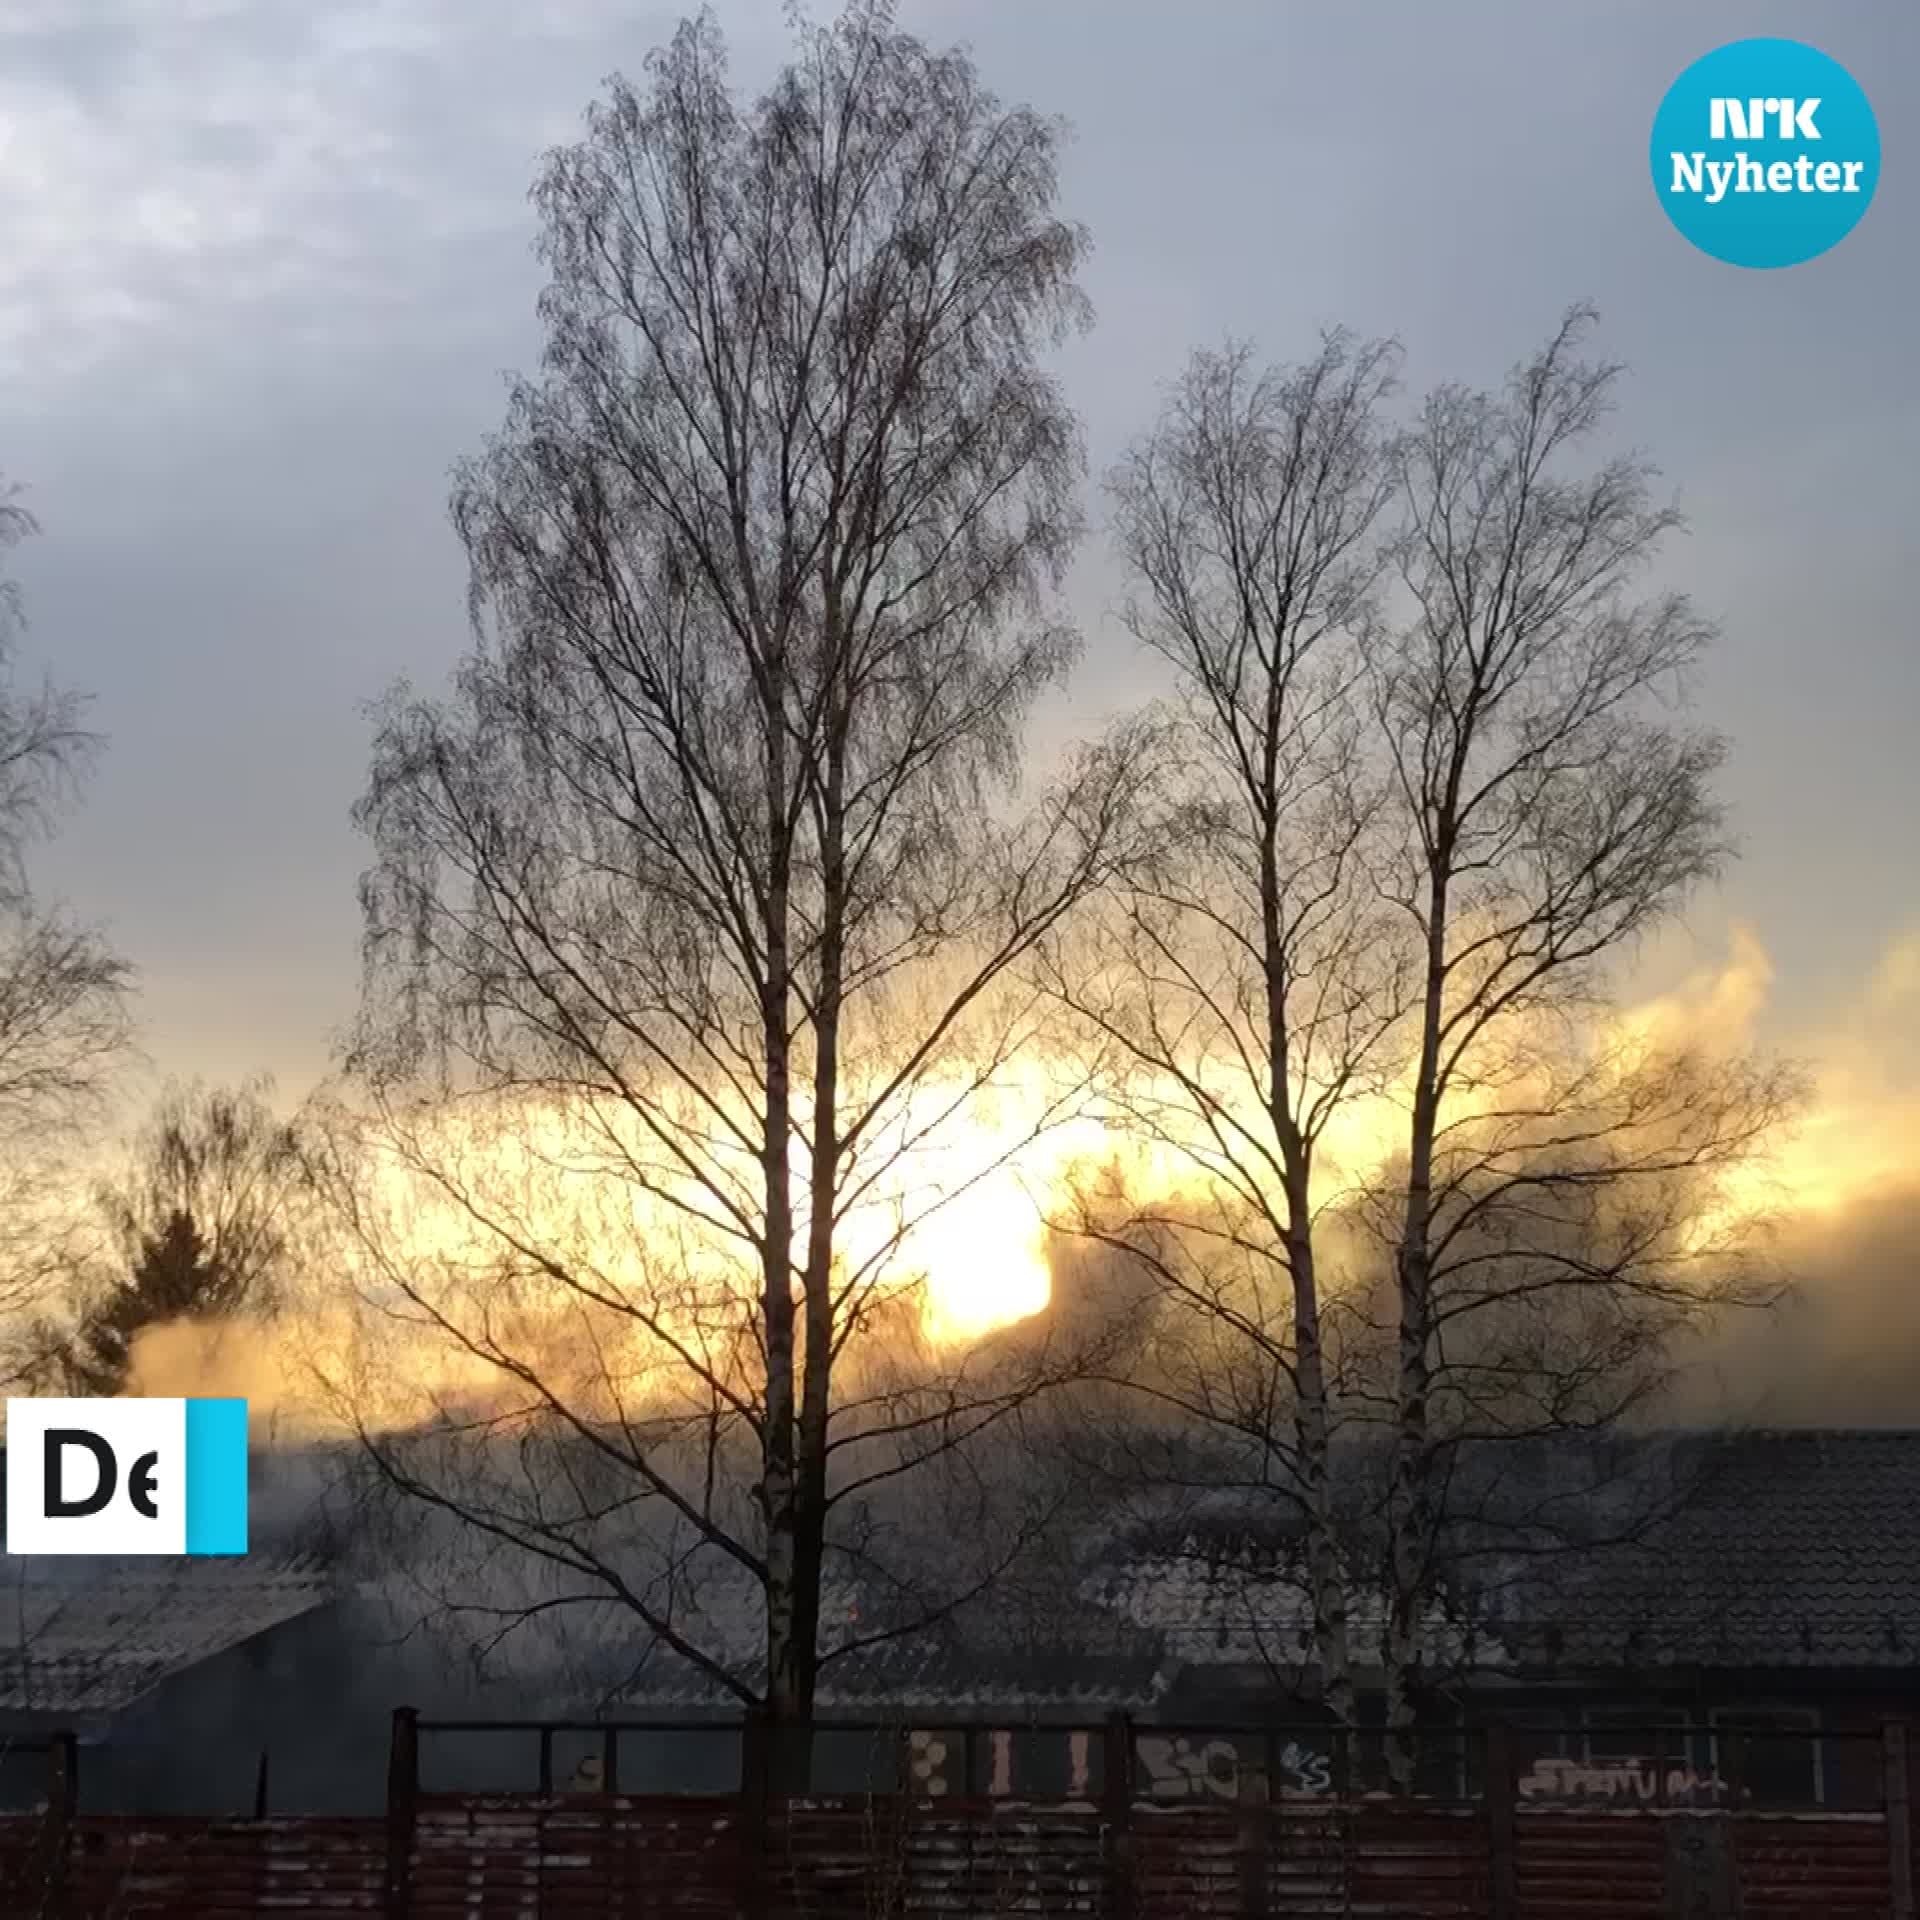 Grave incendie dans un jardin d’enfants à Oslo – NRK Norvège – Aperçu des nouvelles de différentes régions du pays